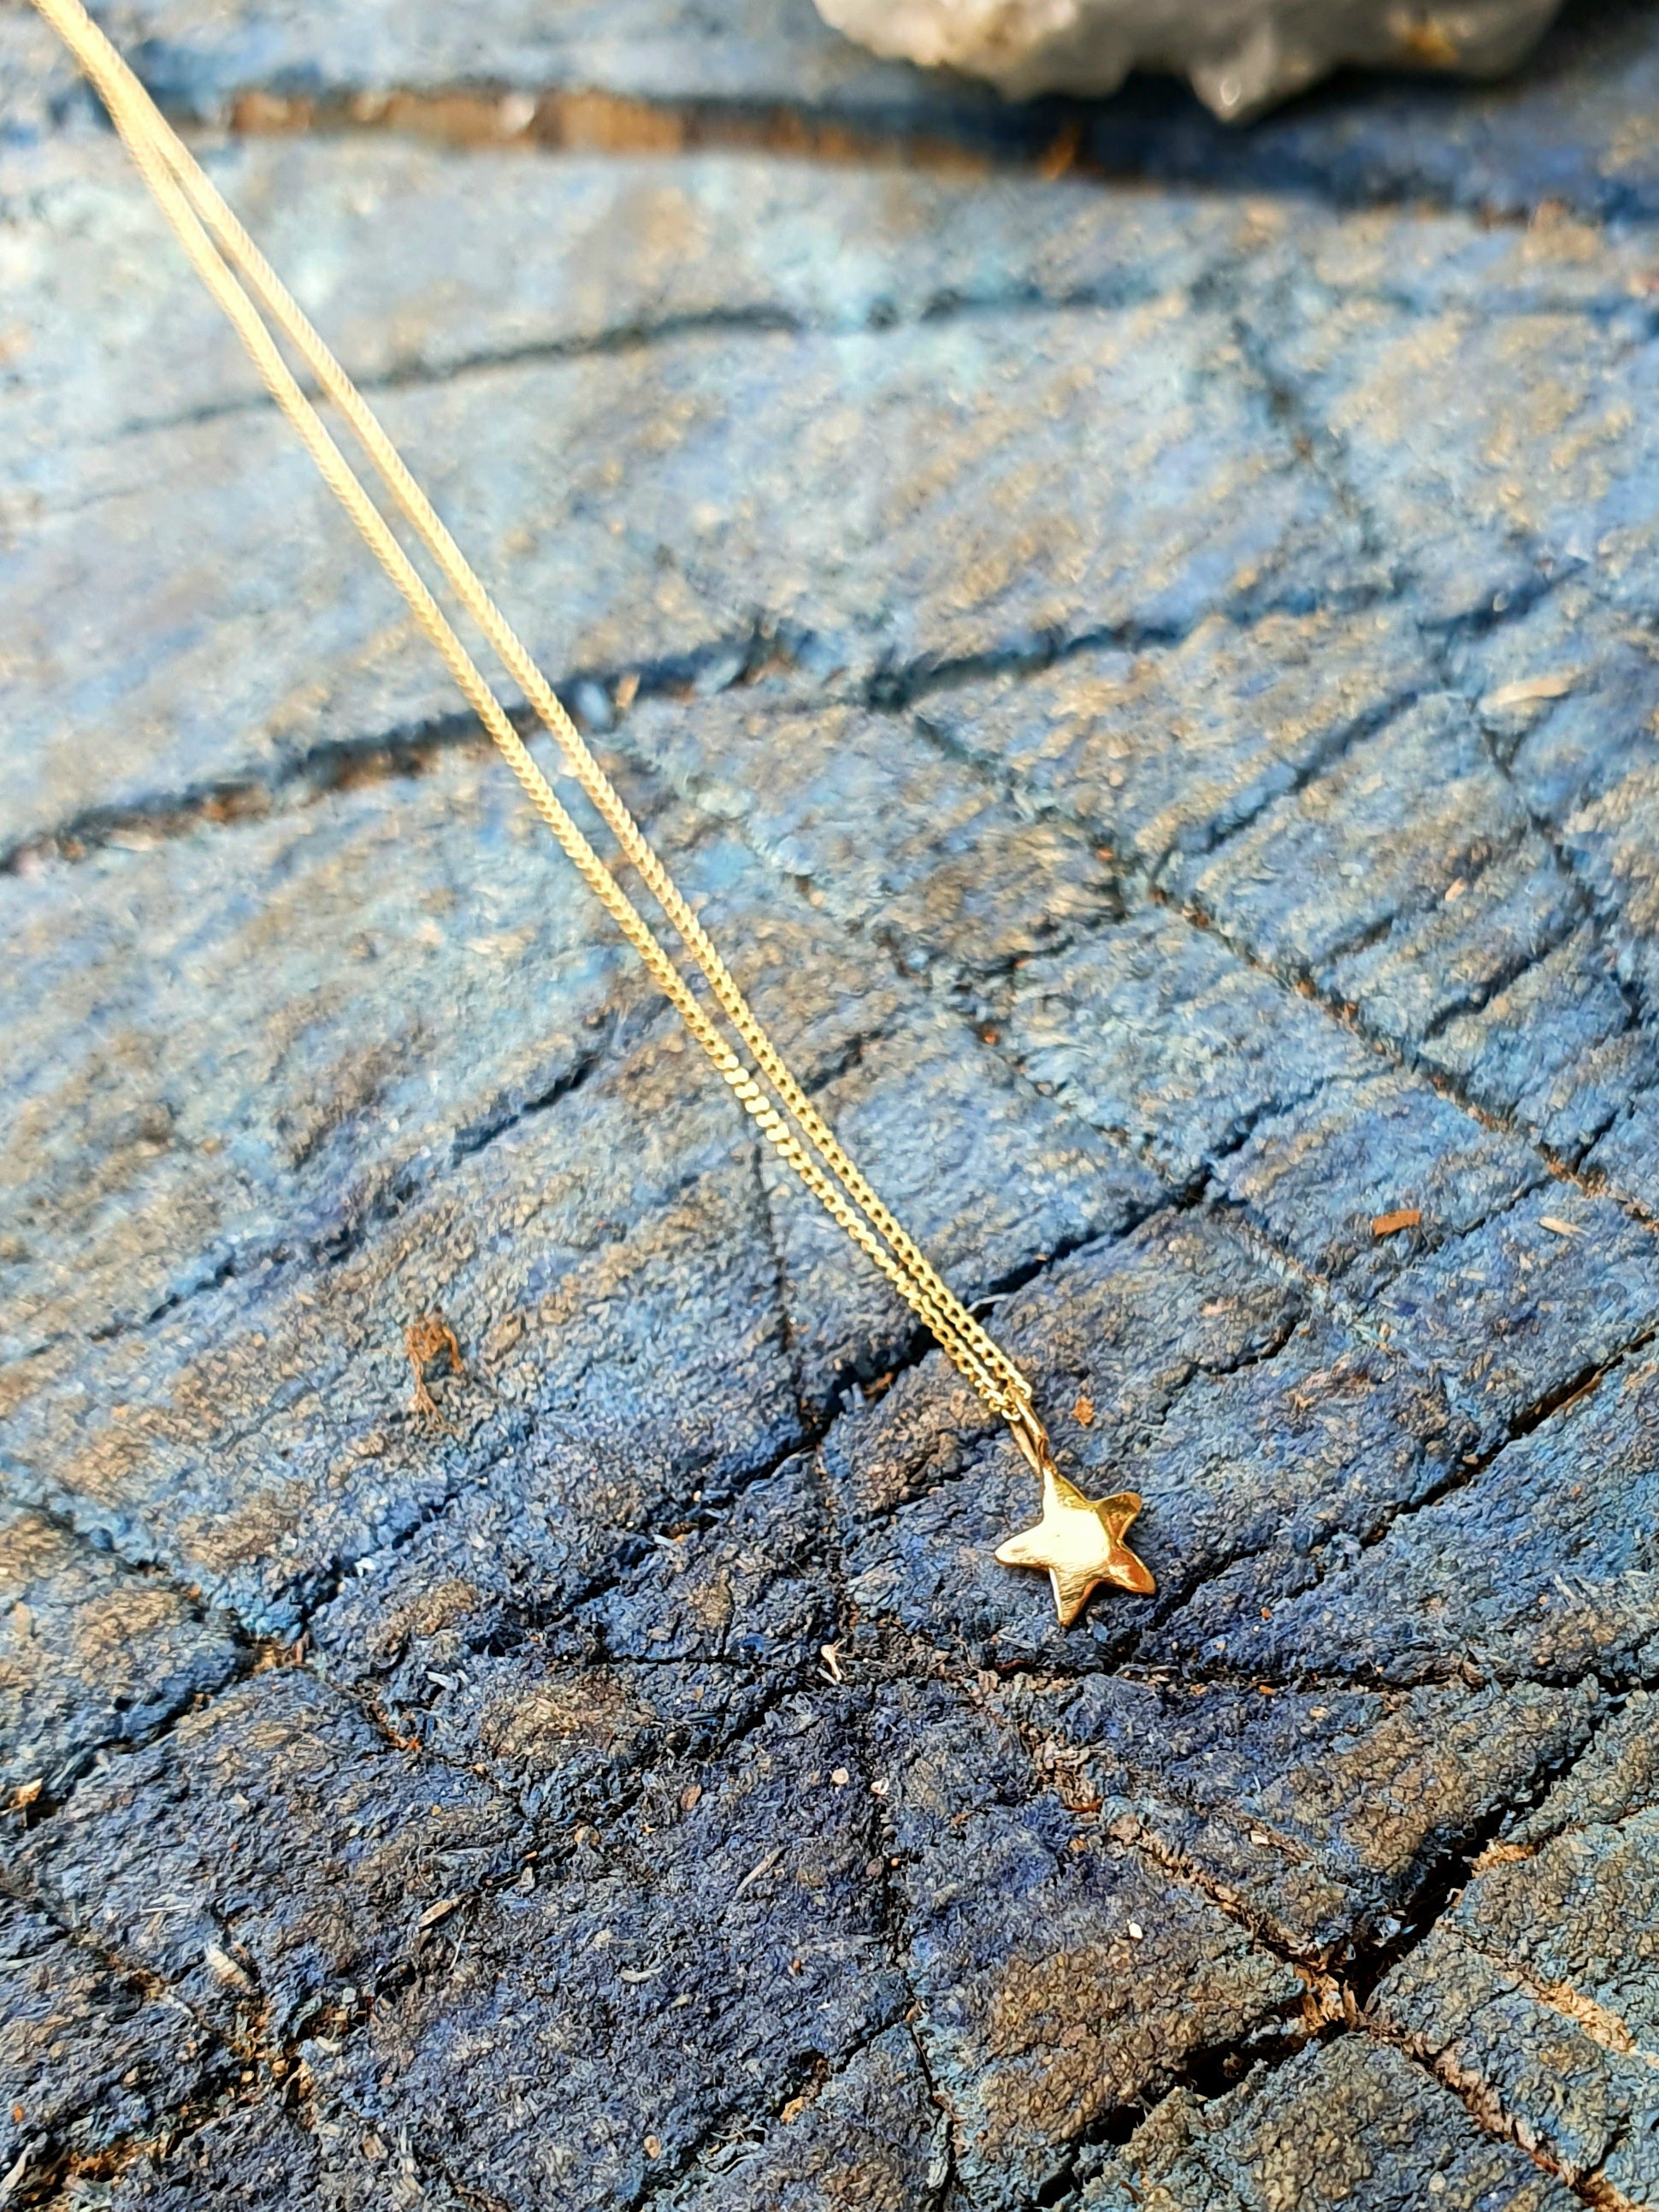 Nova Star Necklace - 9k gold star necklace